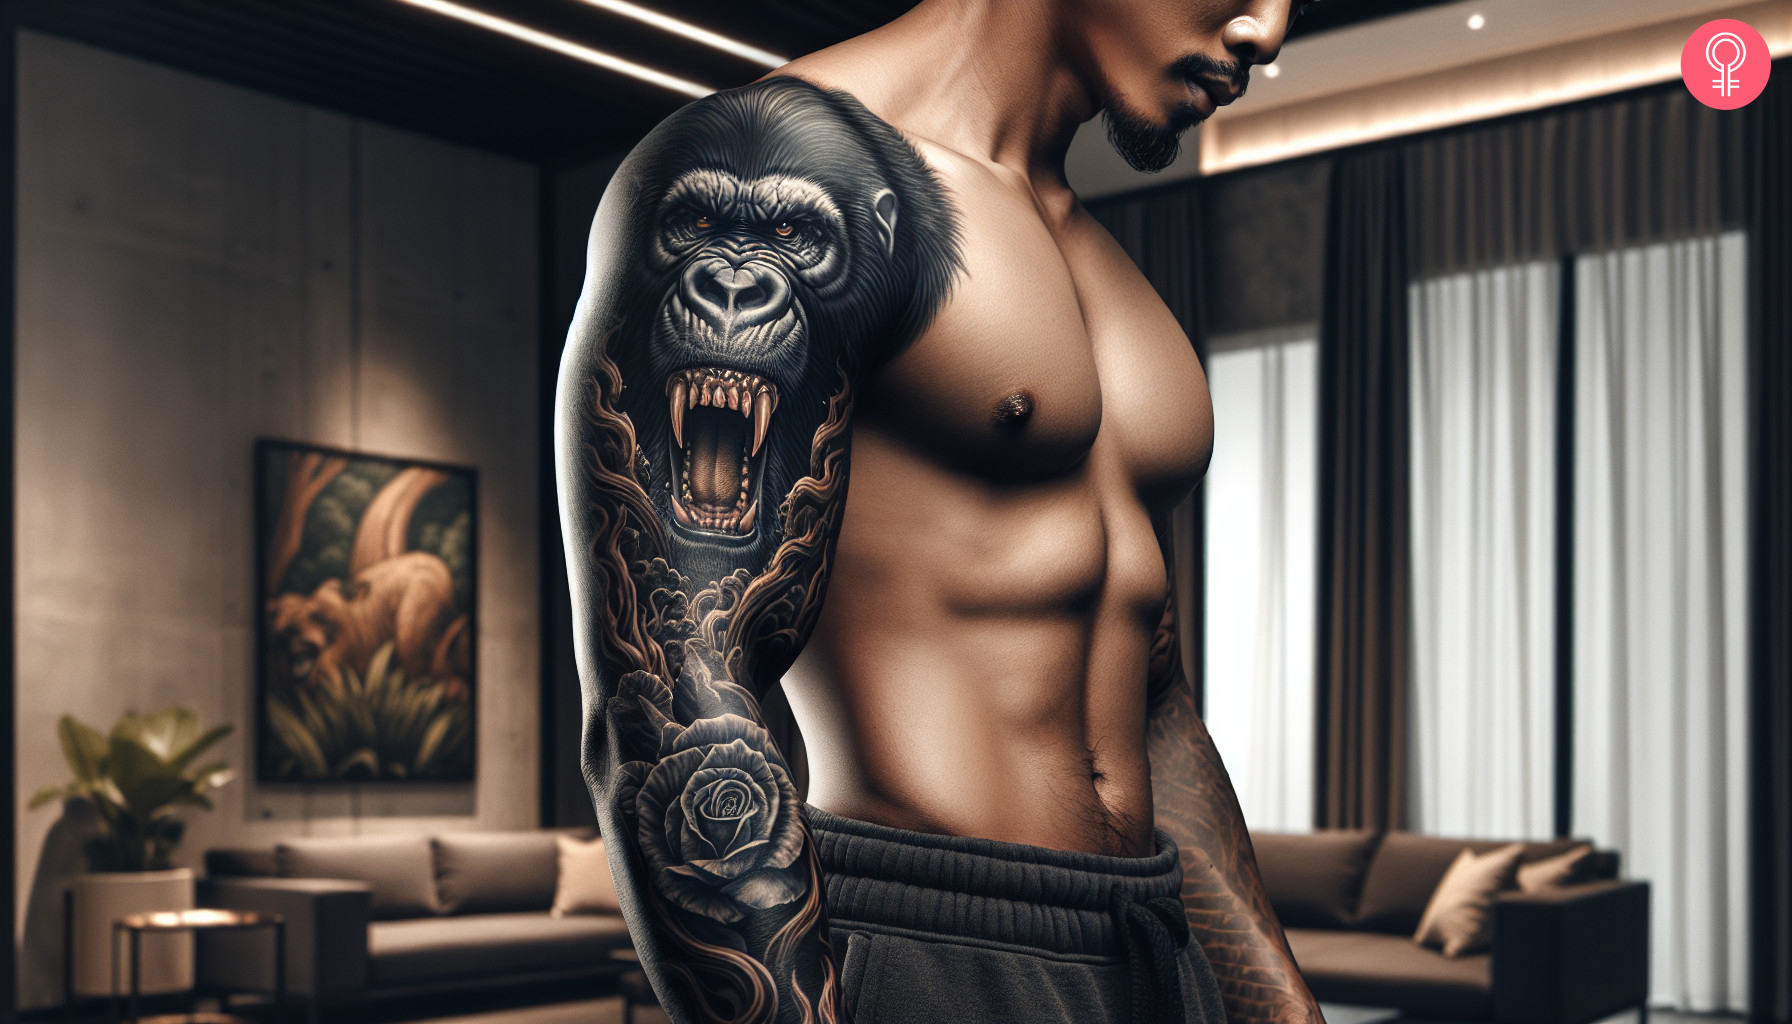 Beast gorilla tattoo on the arm